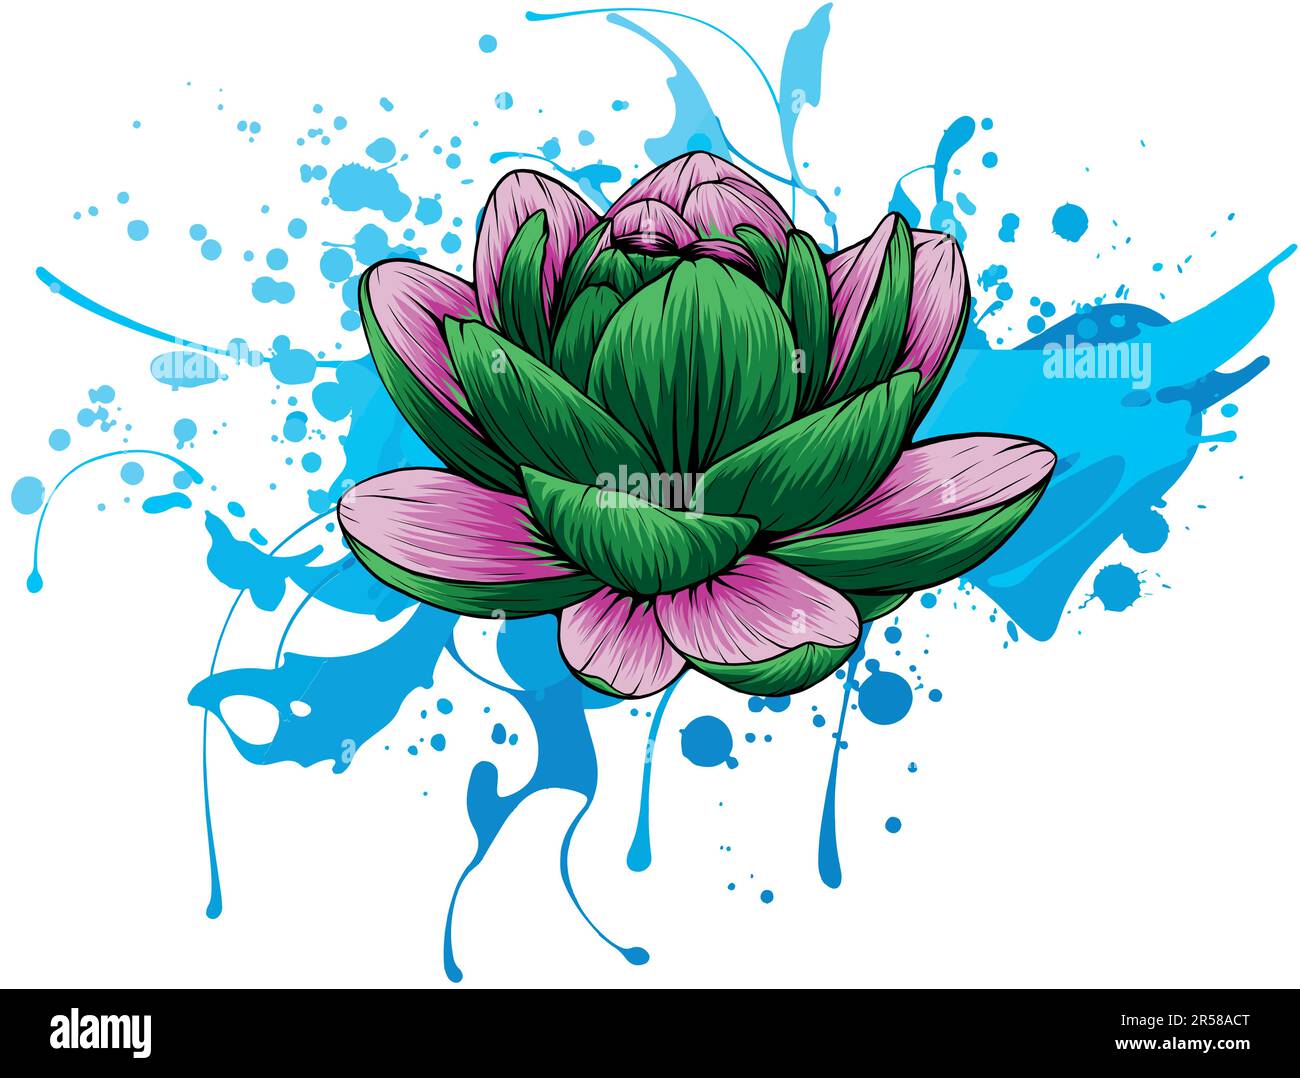 Illustrazione vettoriale di Lily Lotus isolato su sfondo bianco Illustrazione Vettoriale